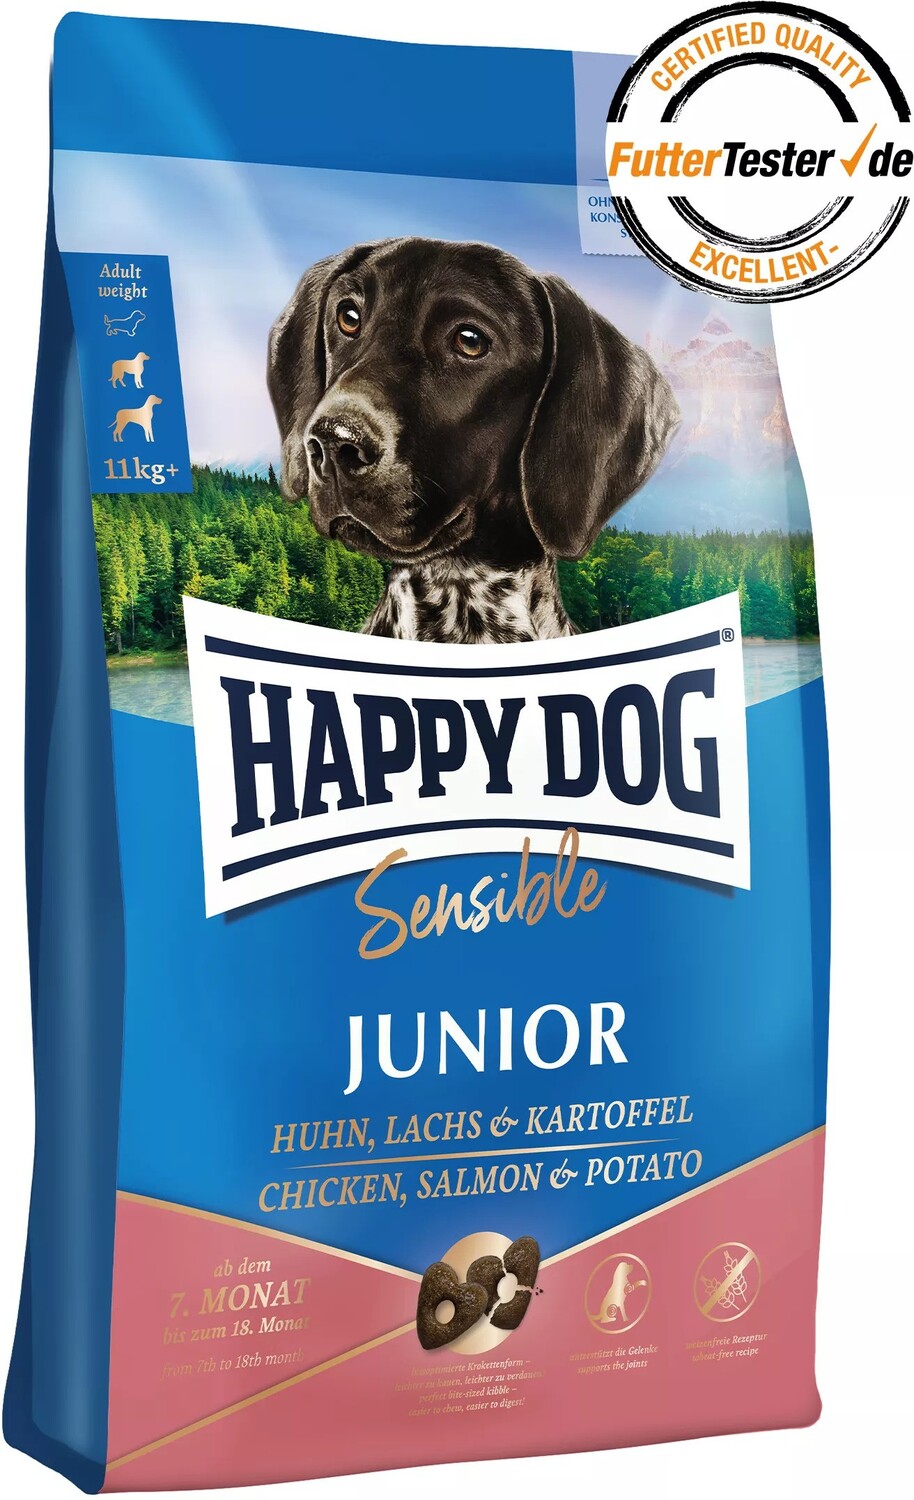 Happy Dog Sensible Junior Salmon & Potato hrană pentru câini în creștere